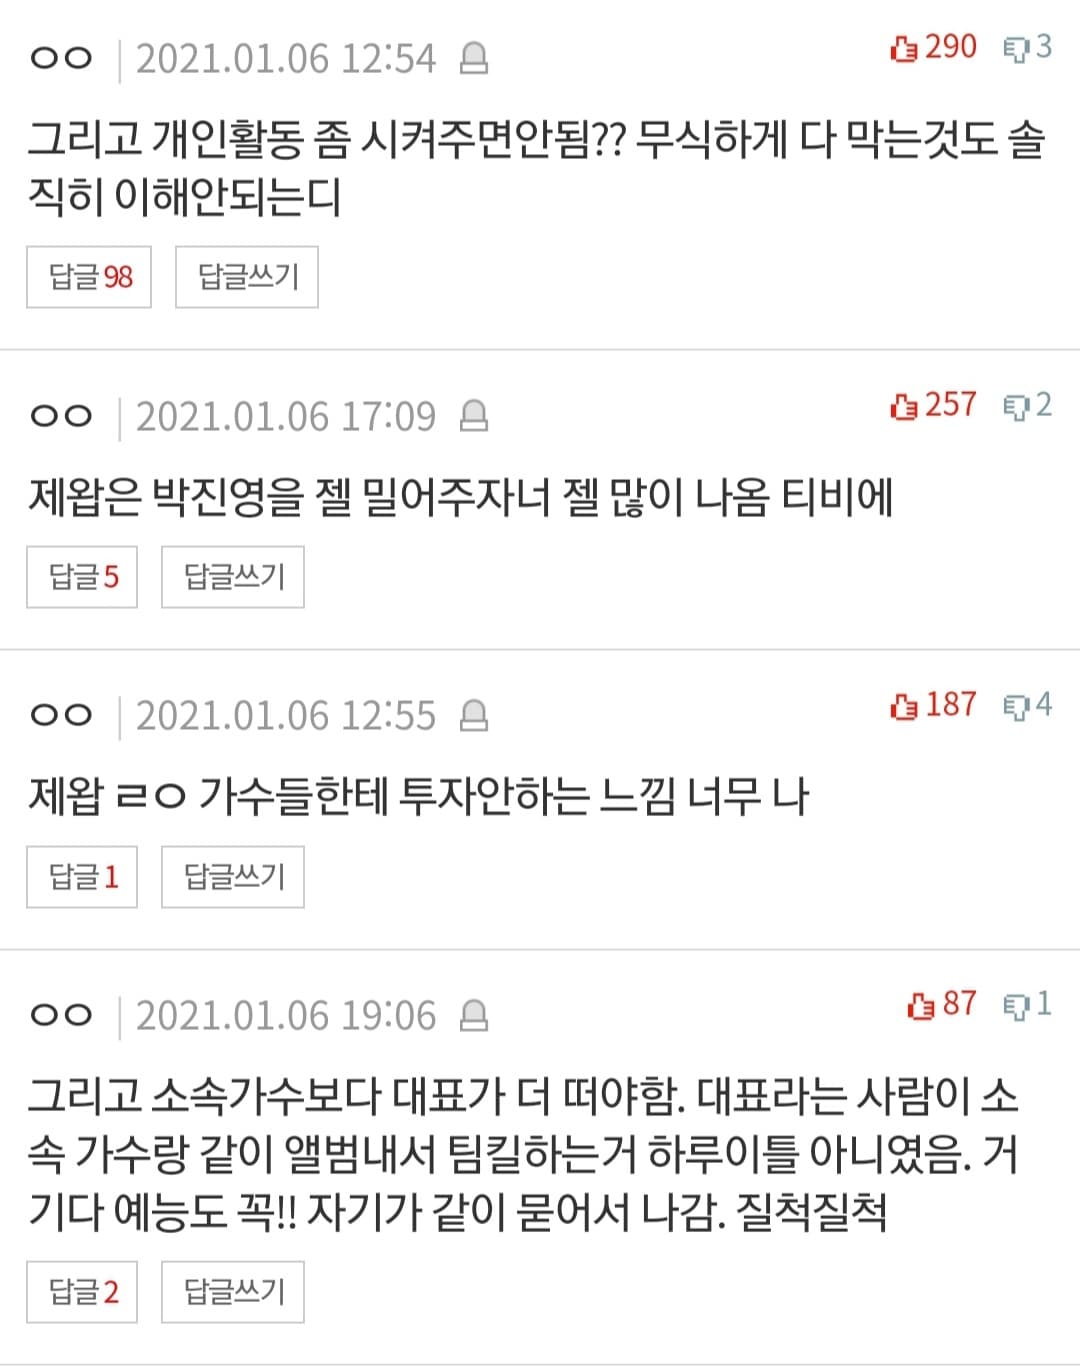 韩网友怒炮轰JYP无理行为！分析旗下艺人“续约率低”的原因